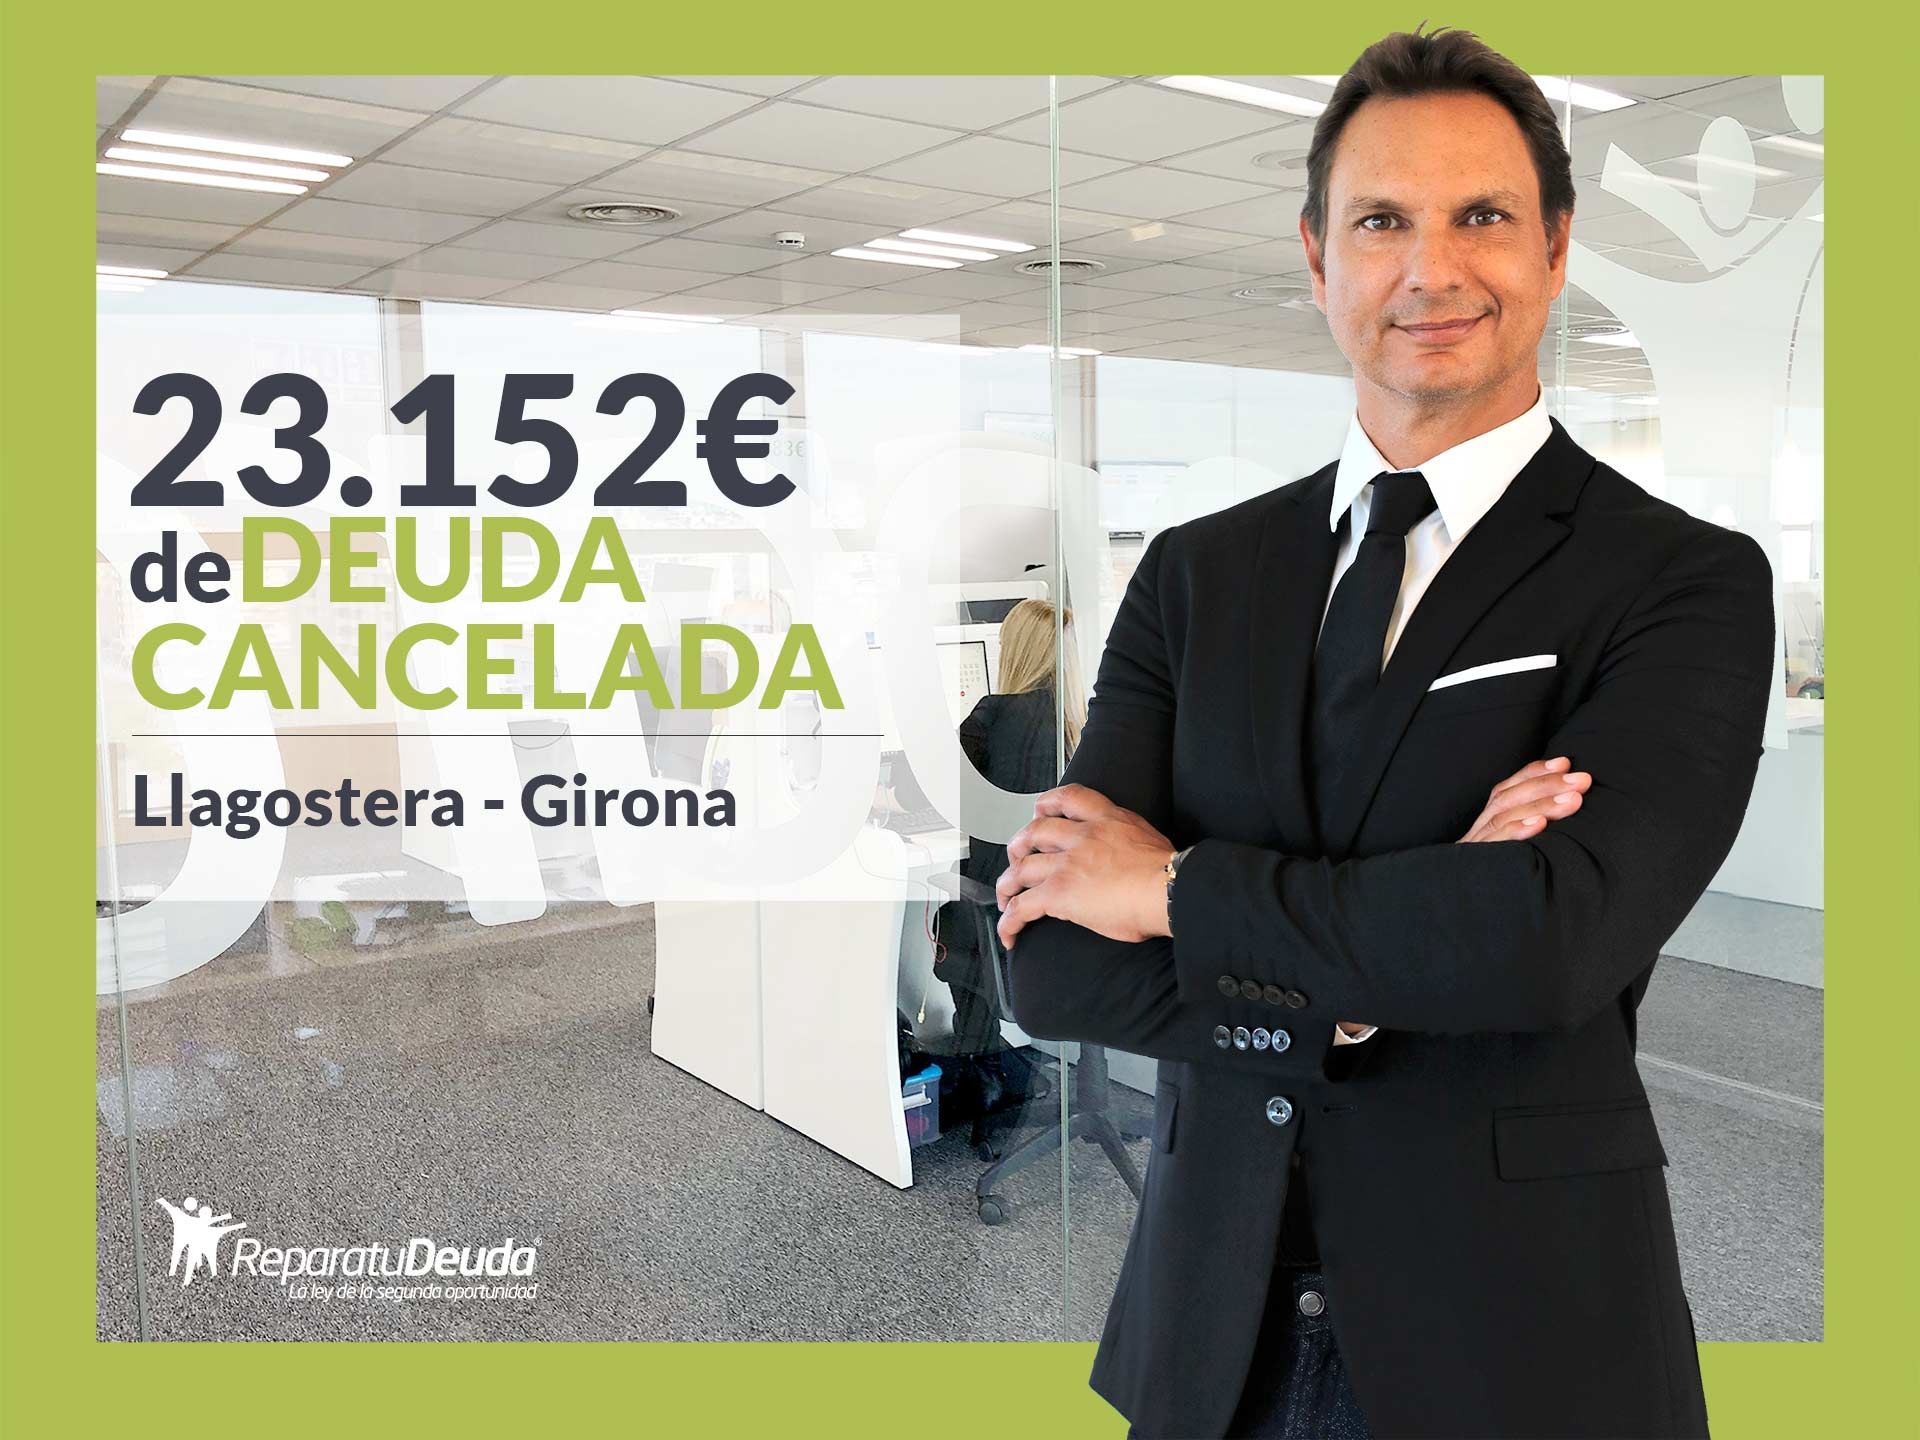 Repara tu Deuda Abogados cancela 23.152? en Llagostera (Girona) con la Ley de Segunda Oportunidad